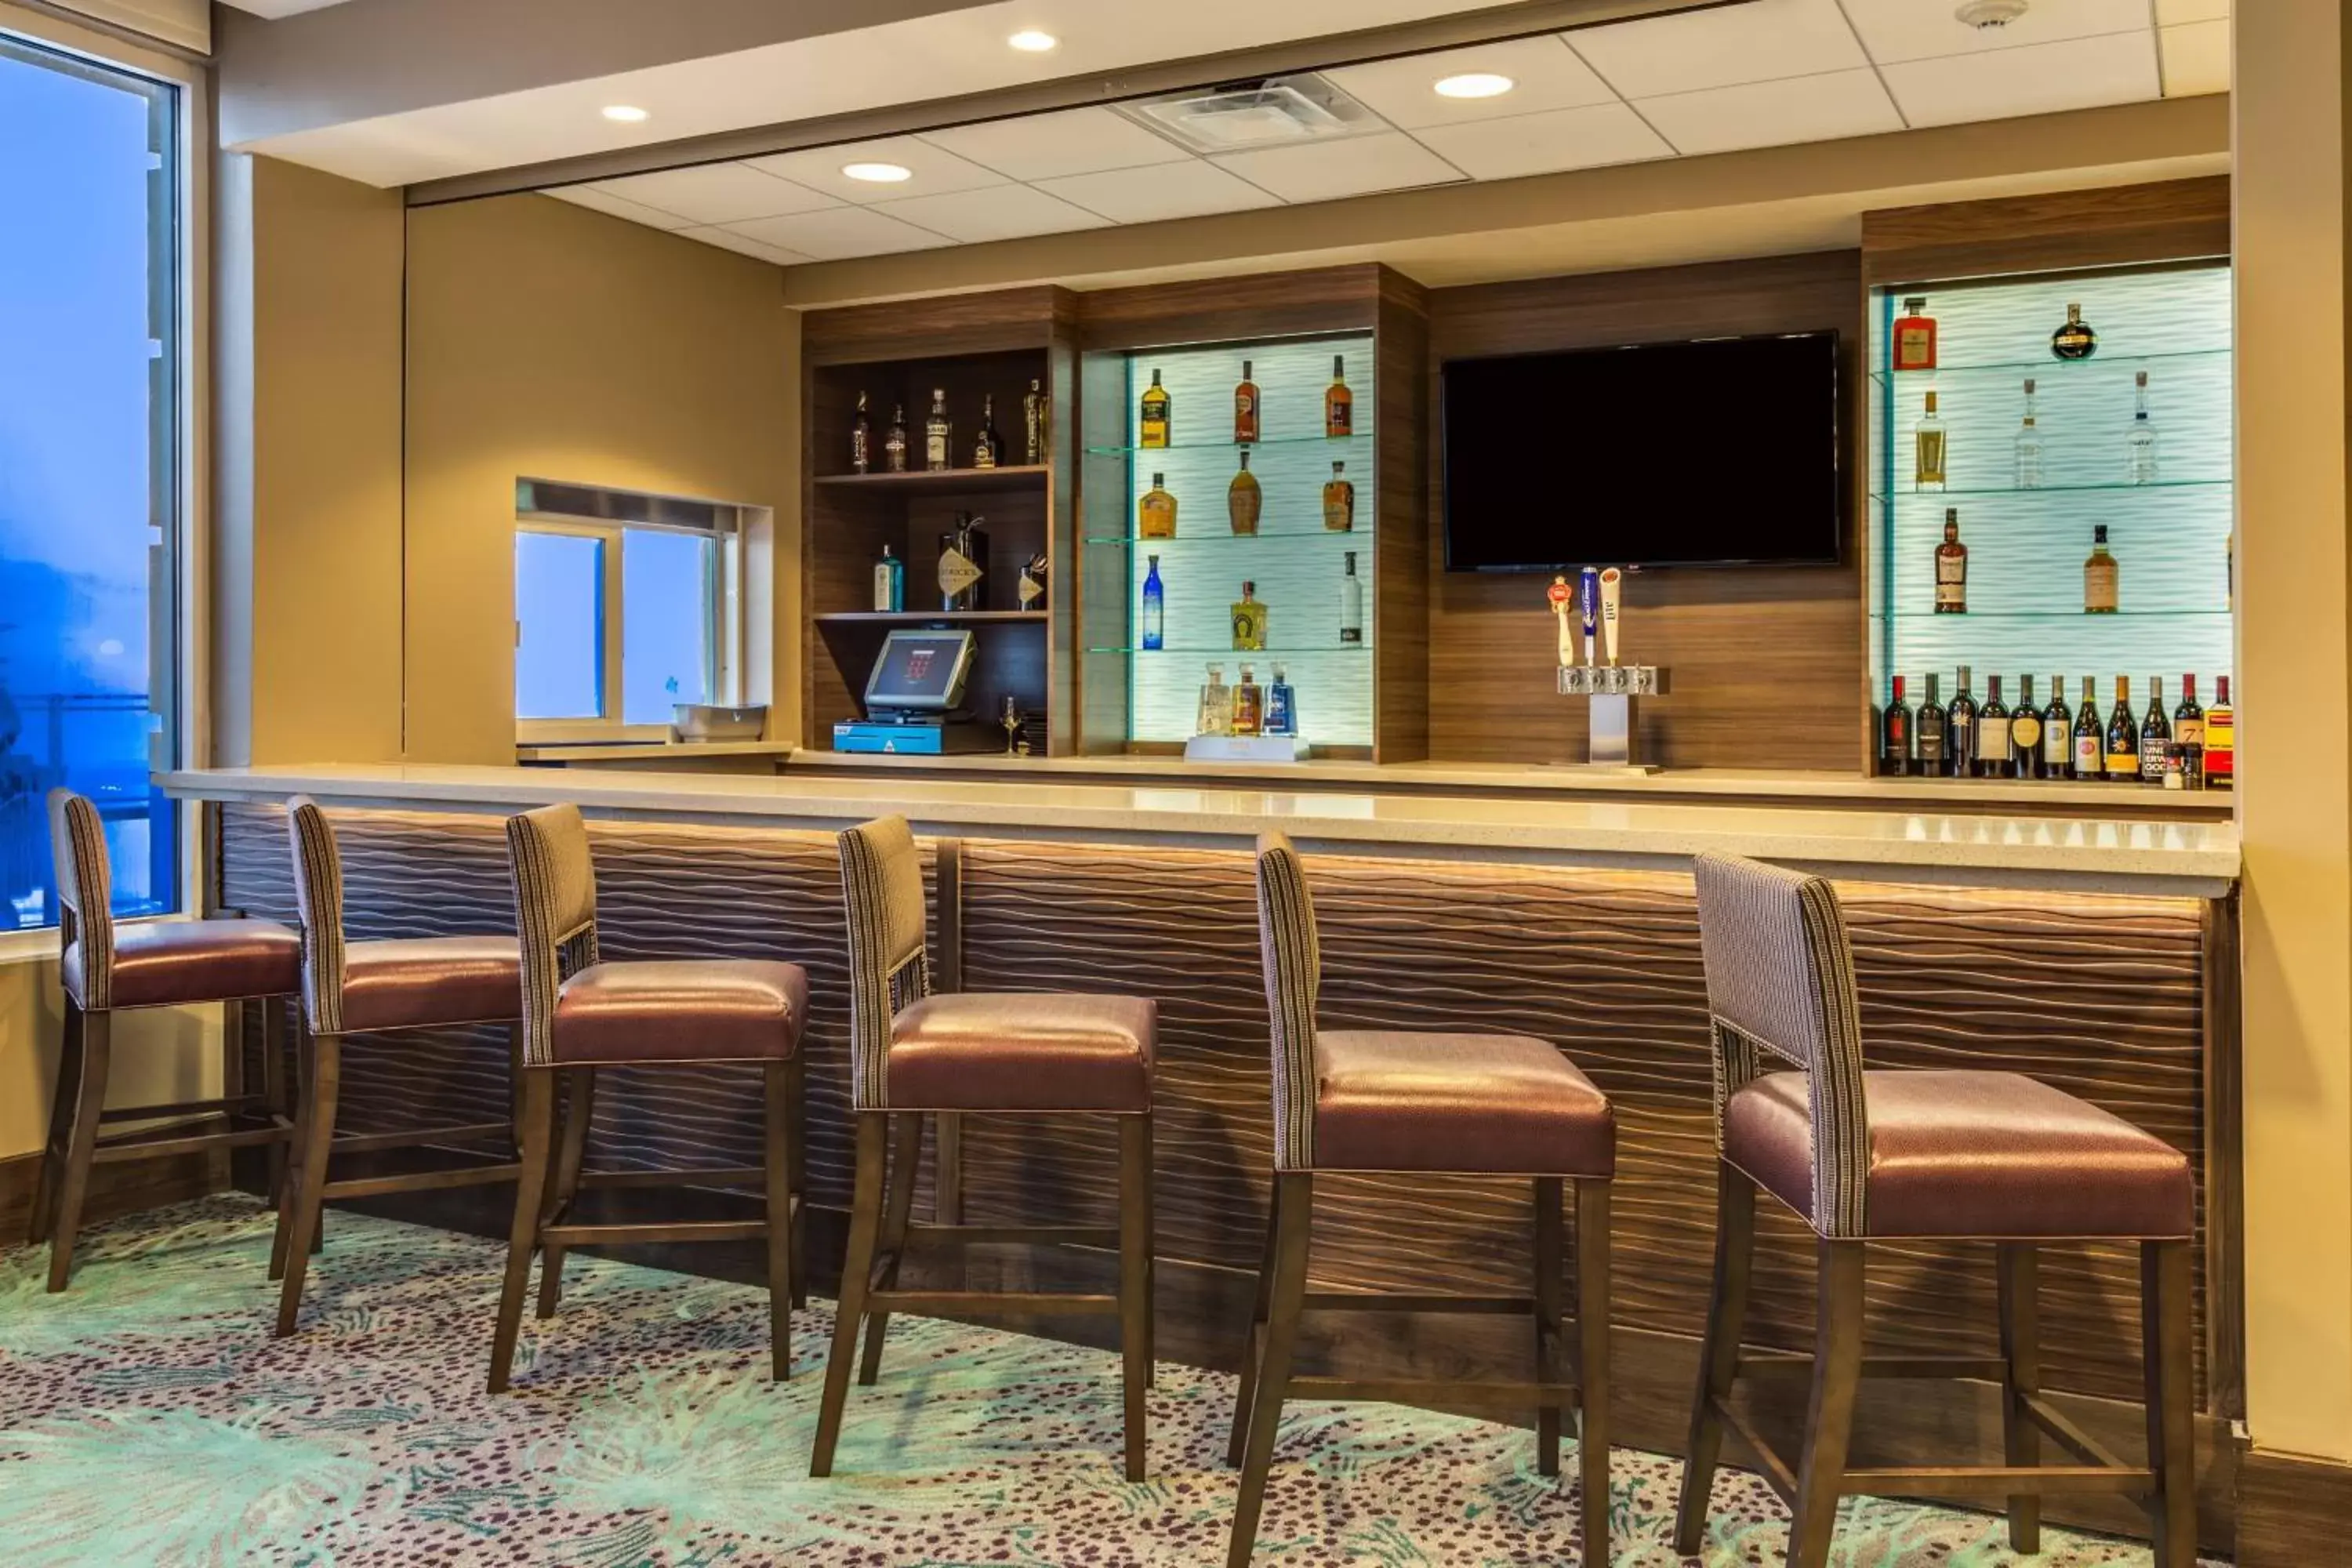 Restaurant/places to eat, Lounge/Bar in Residence Inn by Marriott Daytona Beach Oceanfront